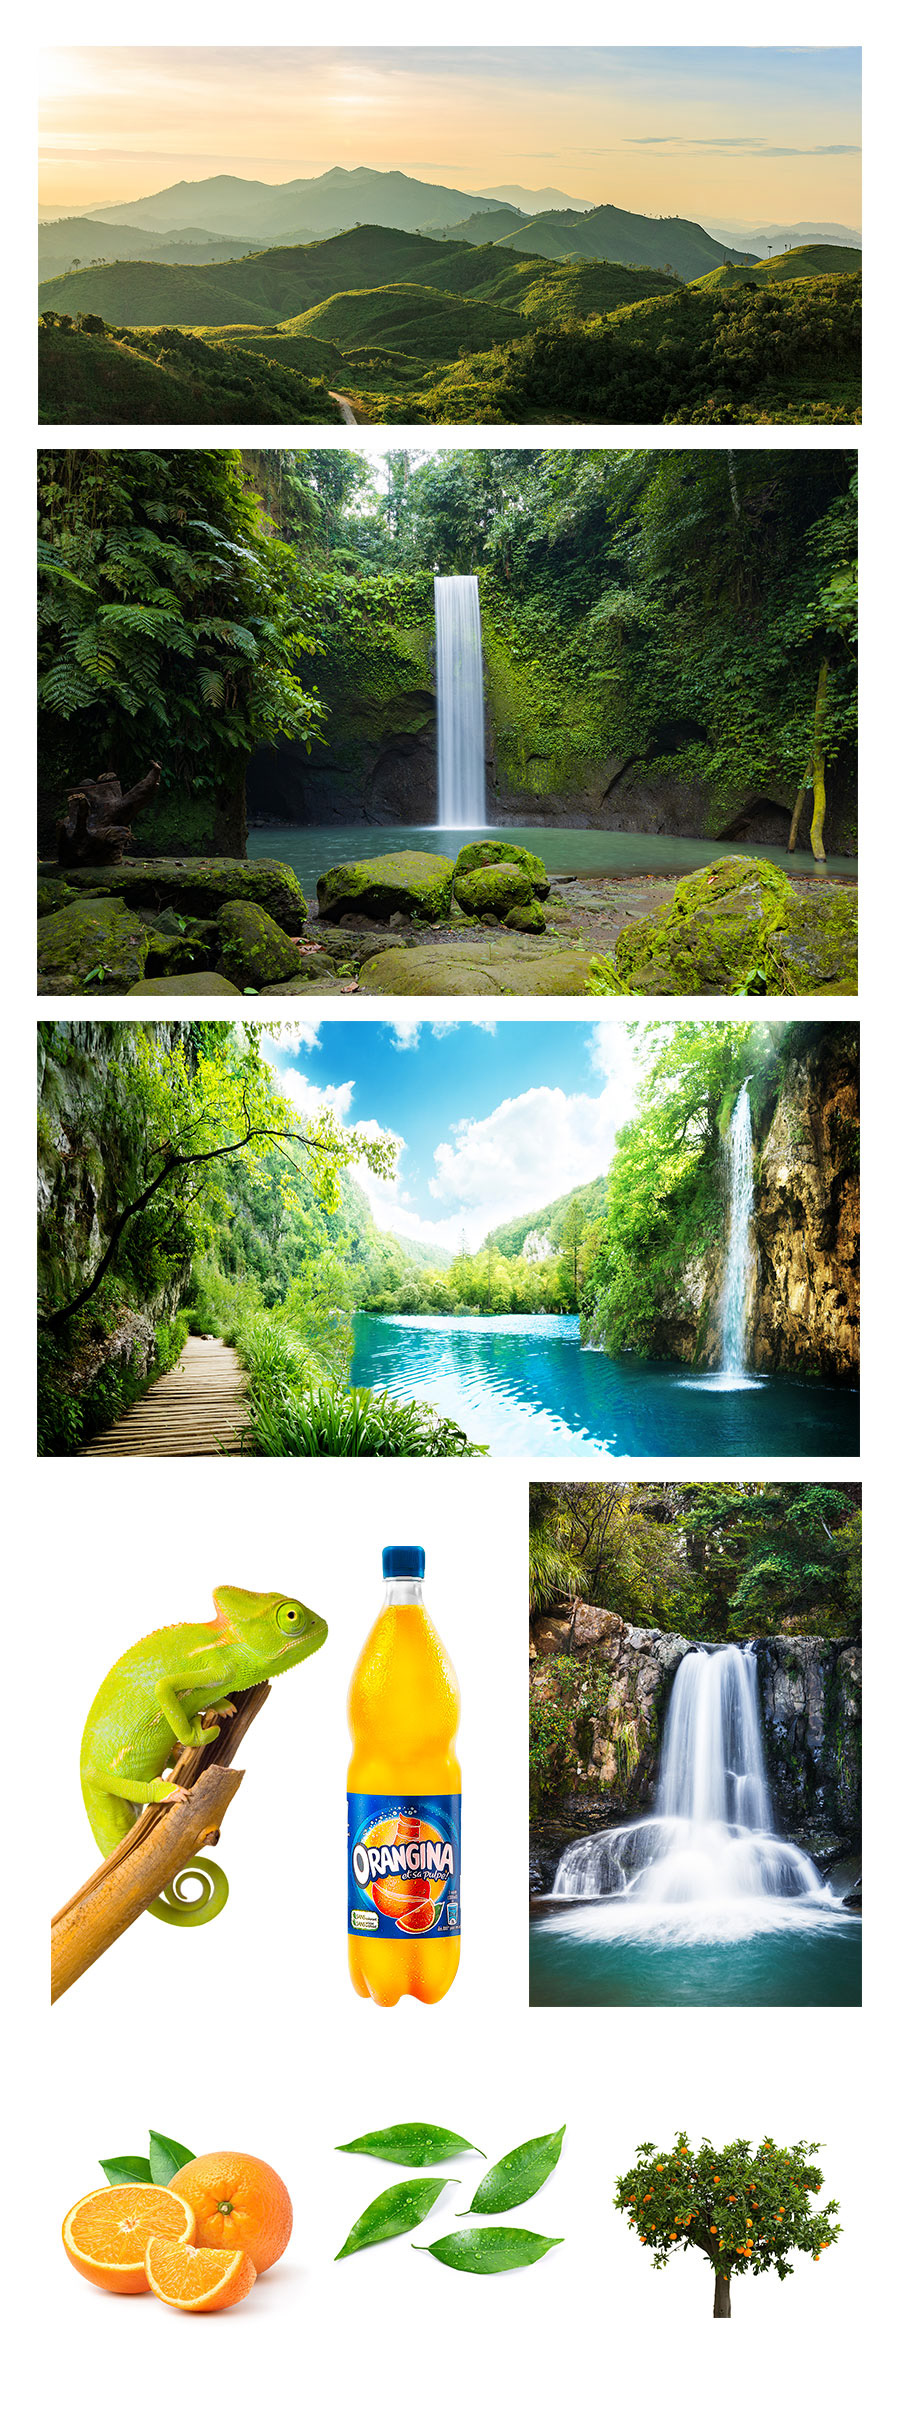 Orangina Gabon Fruit ads graphic design 